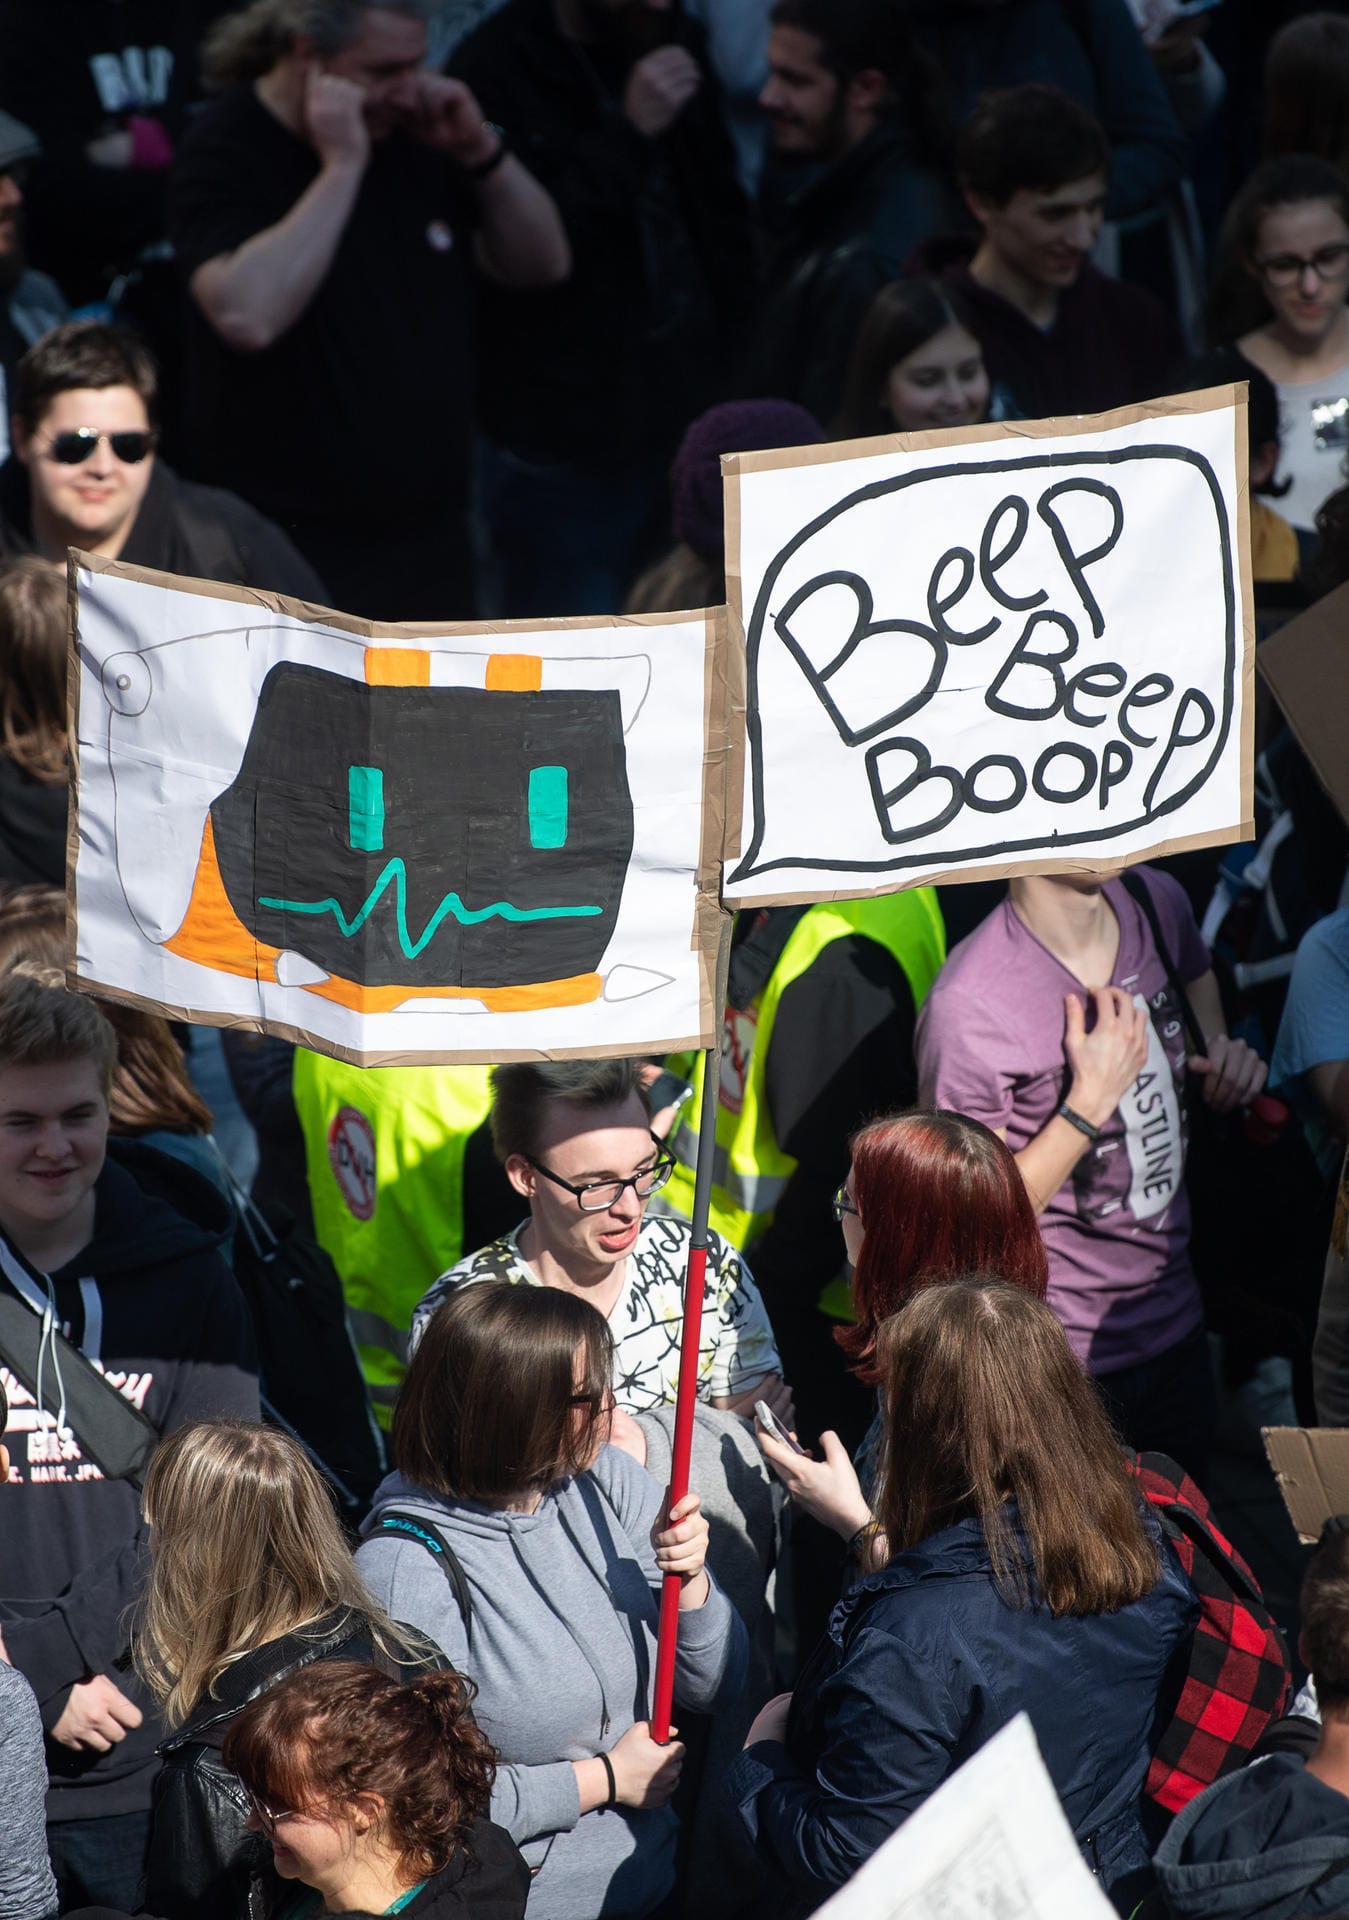 Eine Teilnehmerin in Stuttgart hält ein Schild hoch, auf dem in Anspielung auf Bots "Beep Beep Boop" steht.